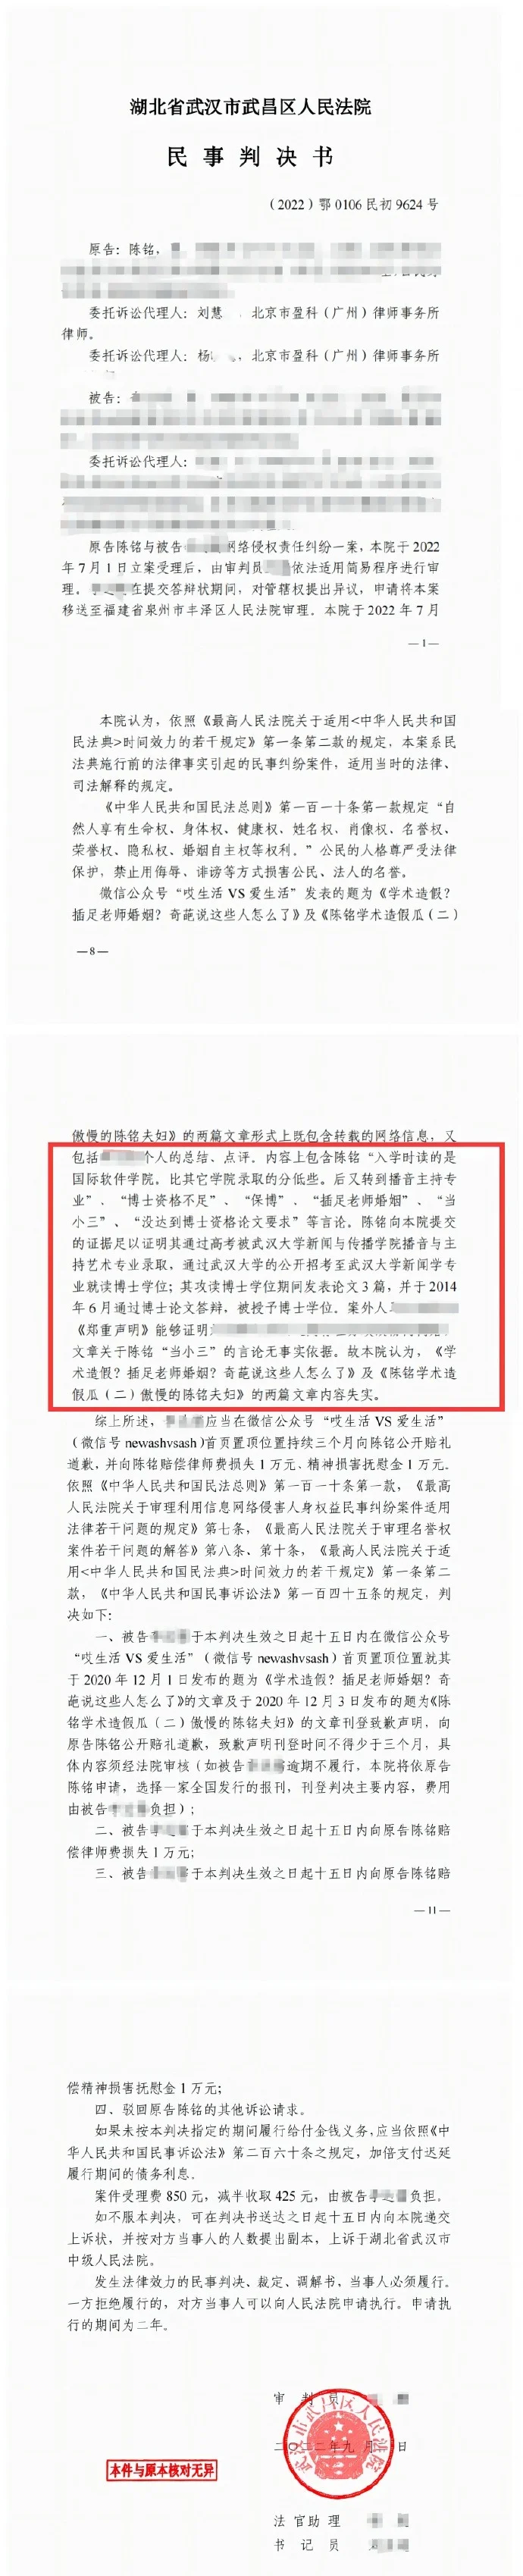 陈铭发文回应论文争议 澄清网上所查部分并非学术论文